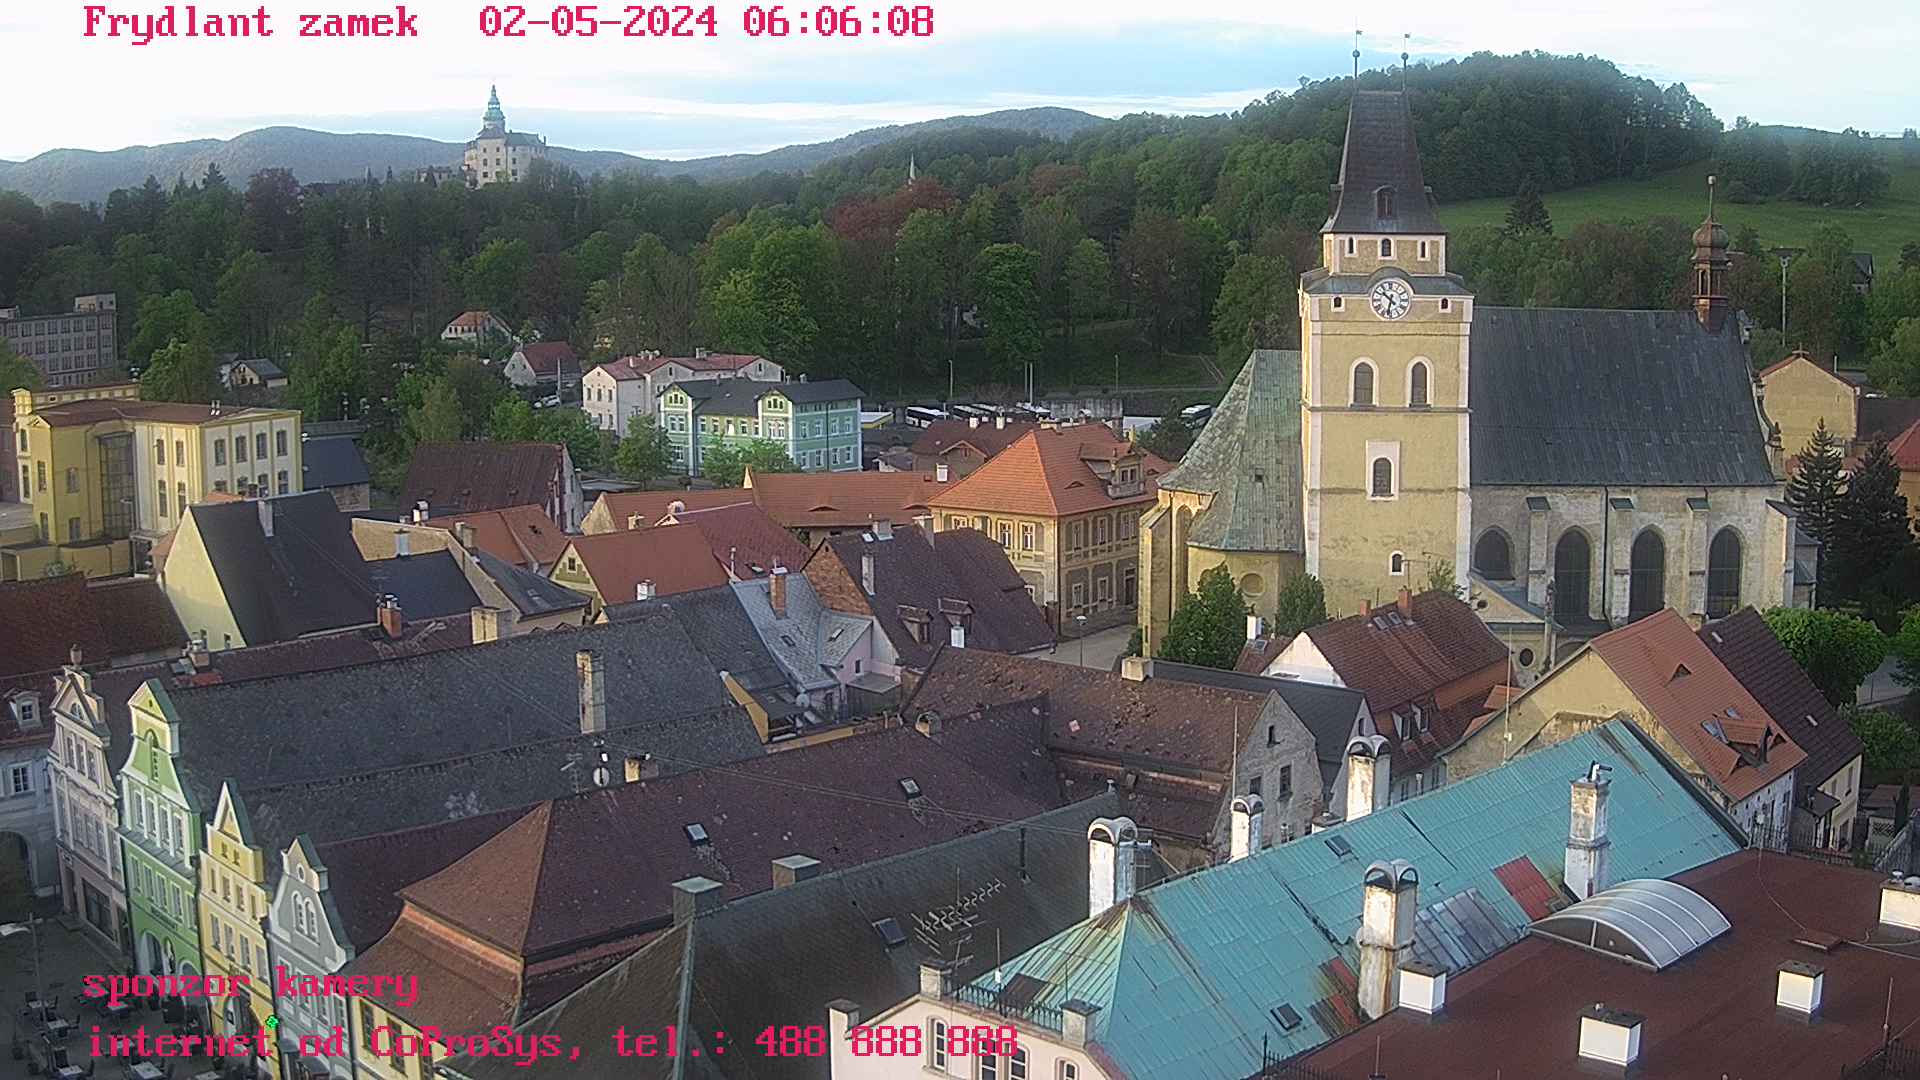 Webkamera Frýdlant - zámek